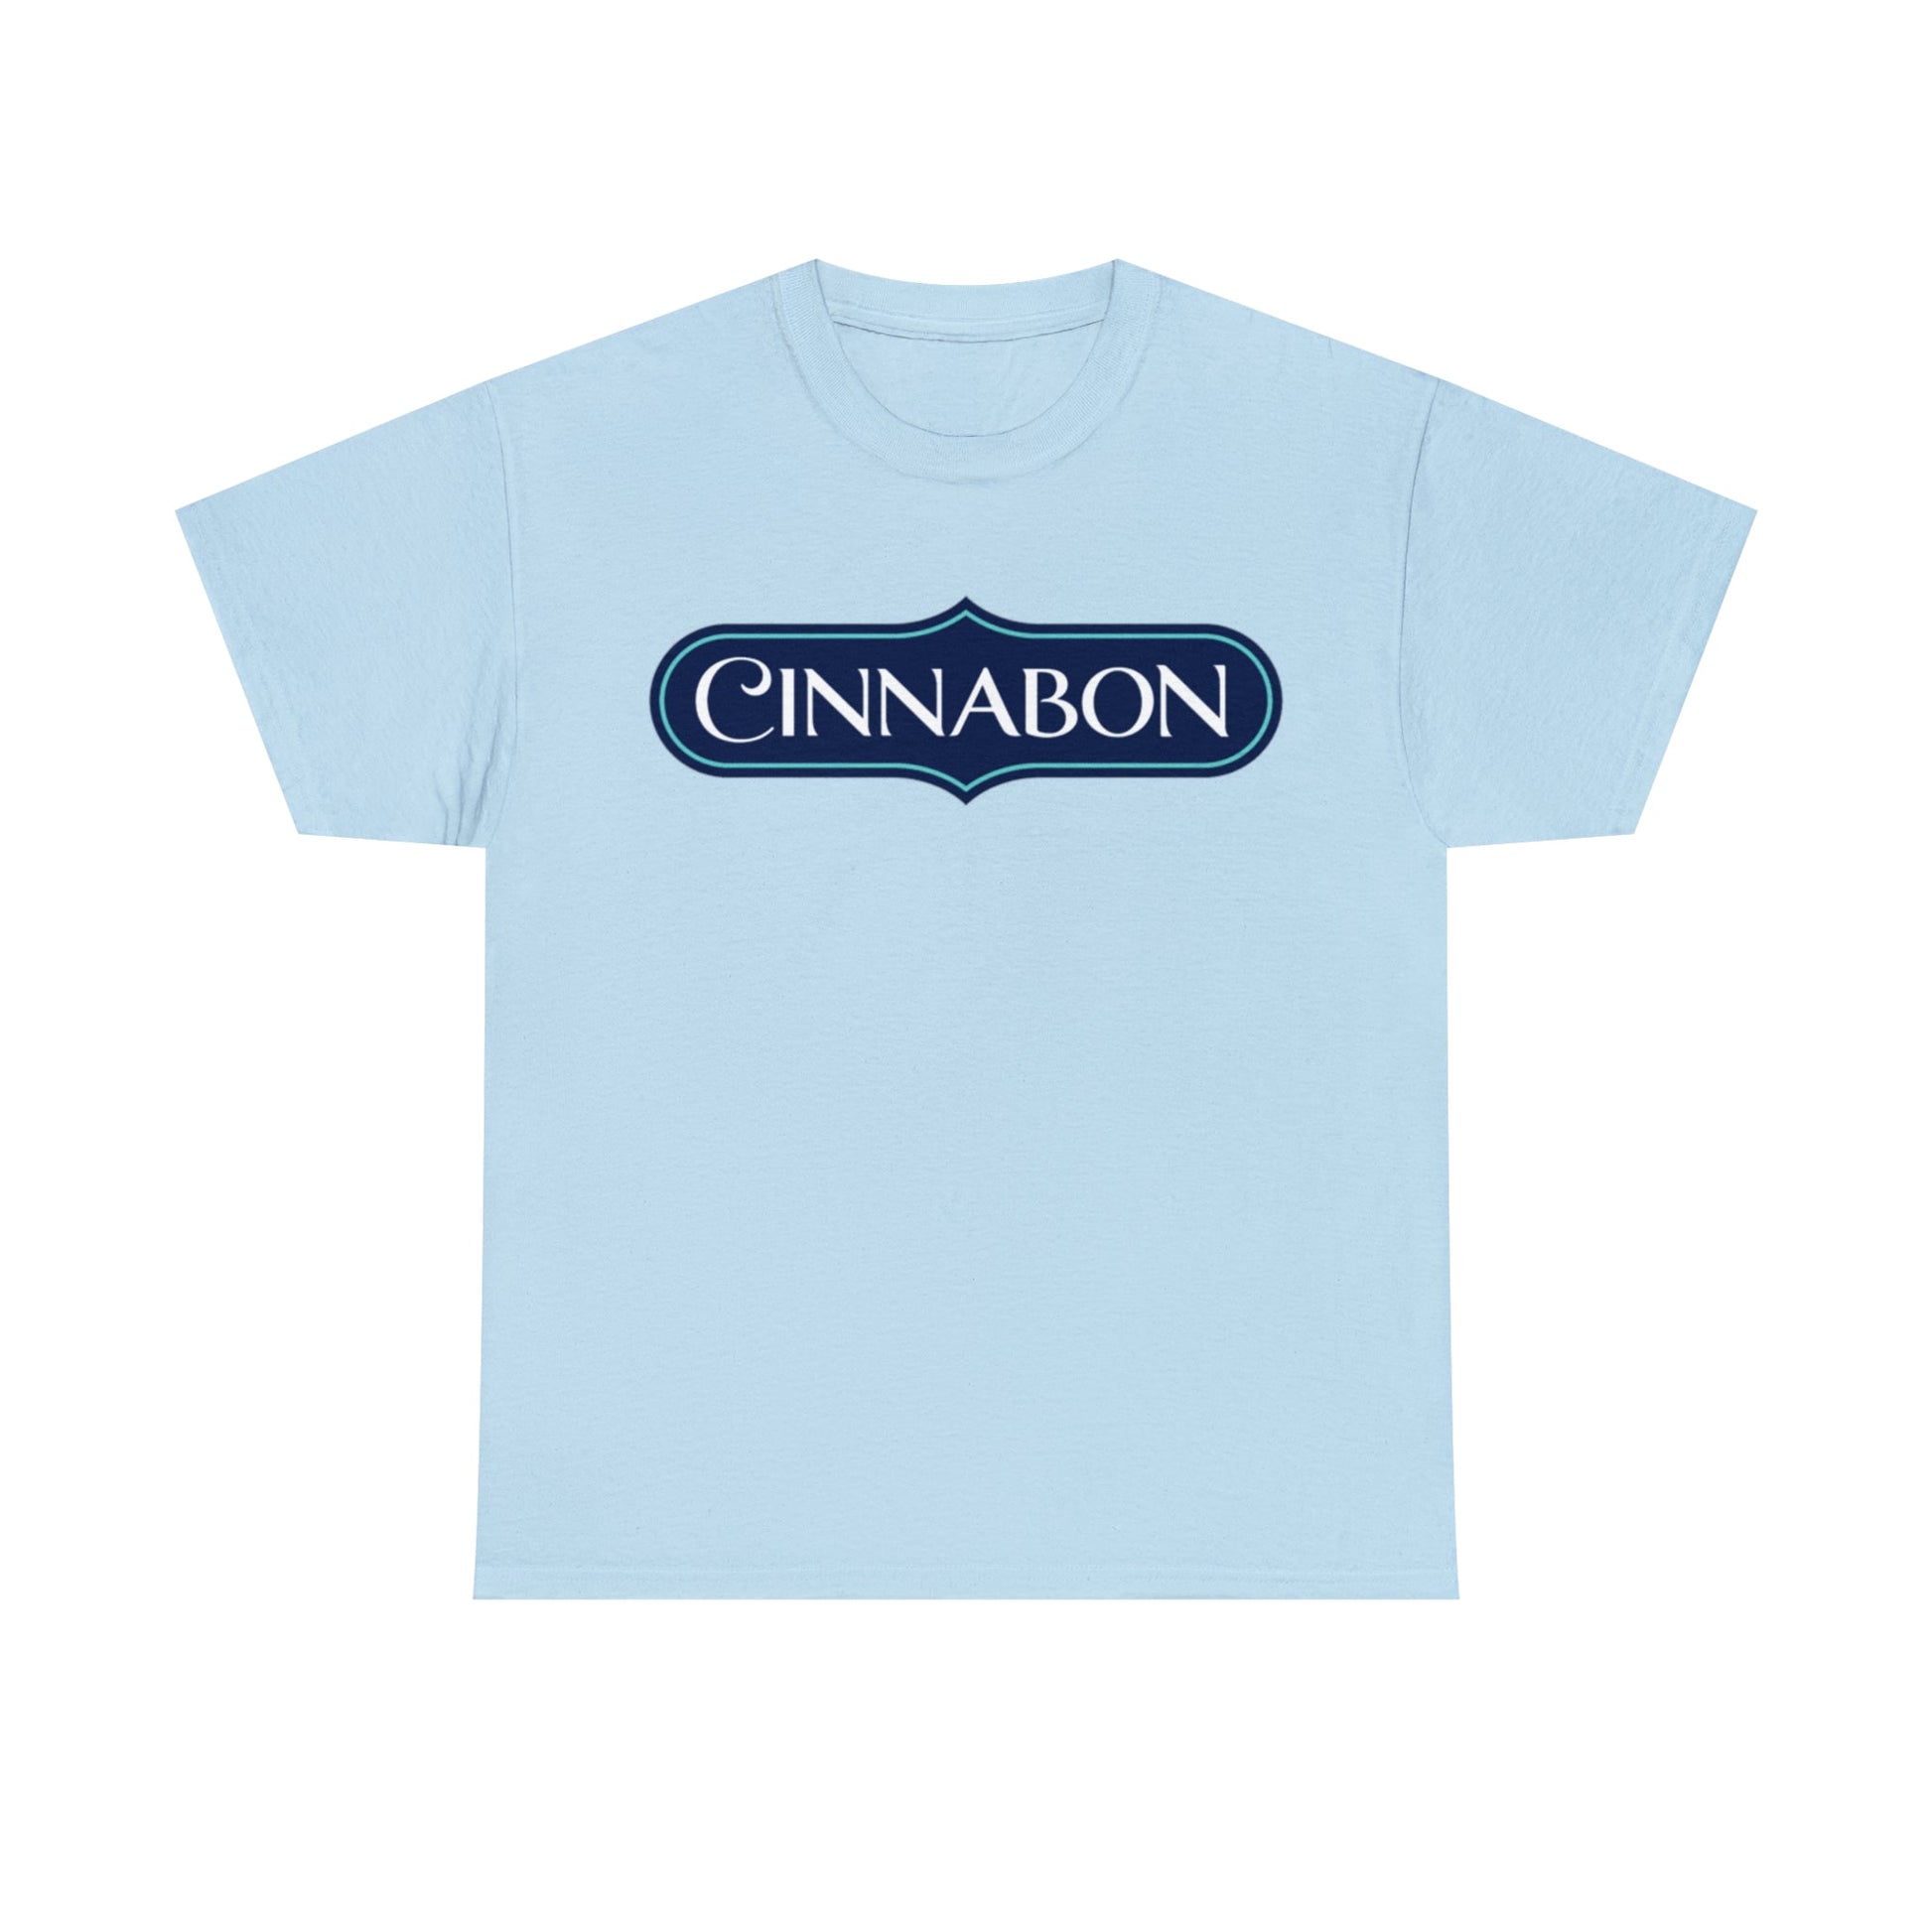 Cinnabon T-Shirt - RetroTeeShop